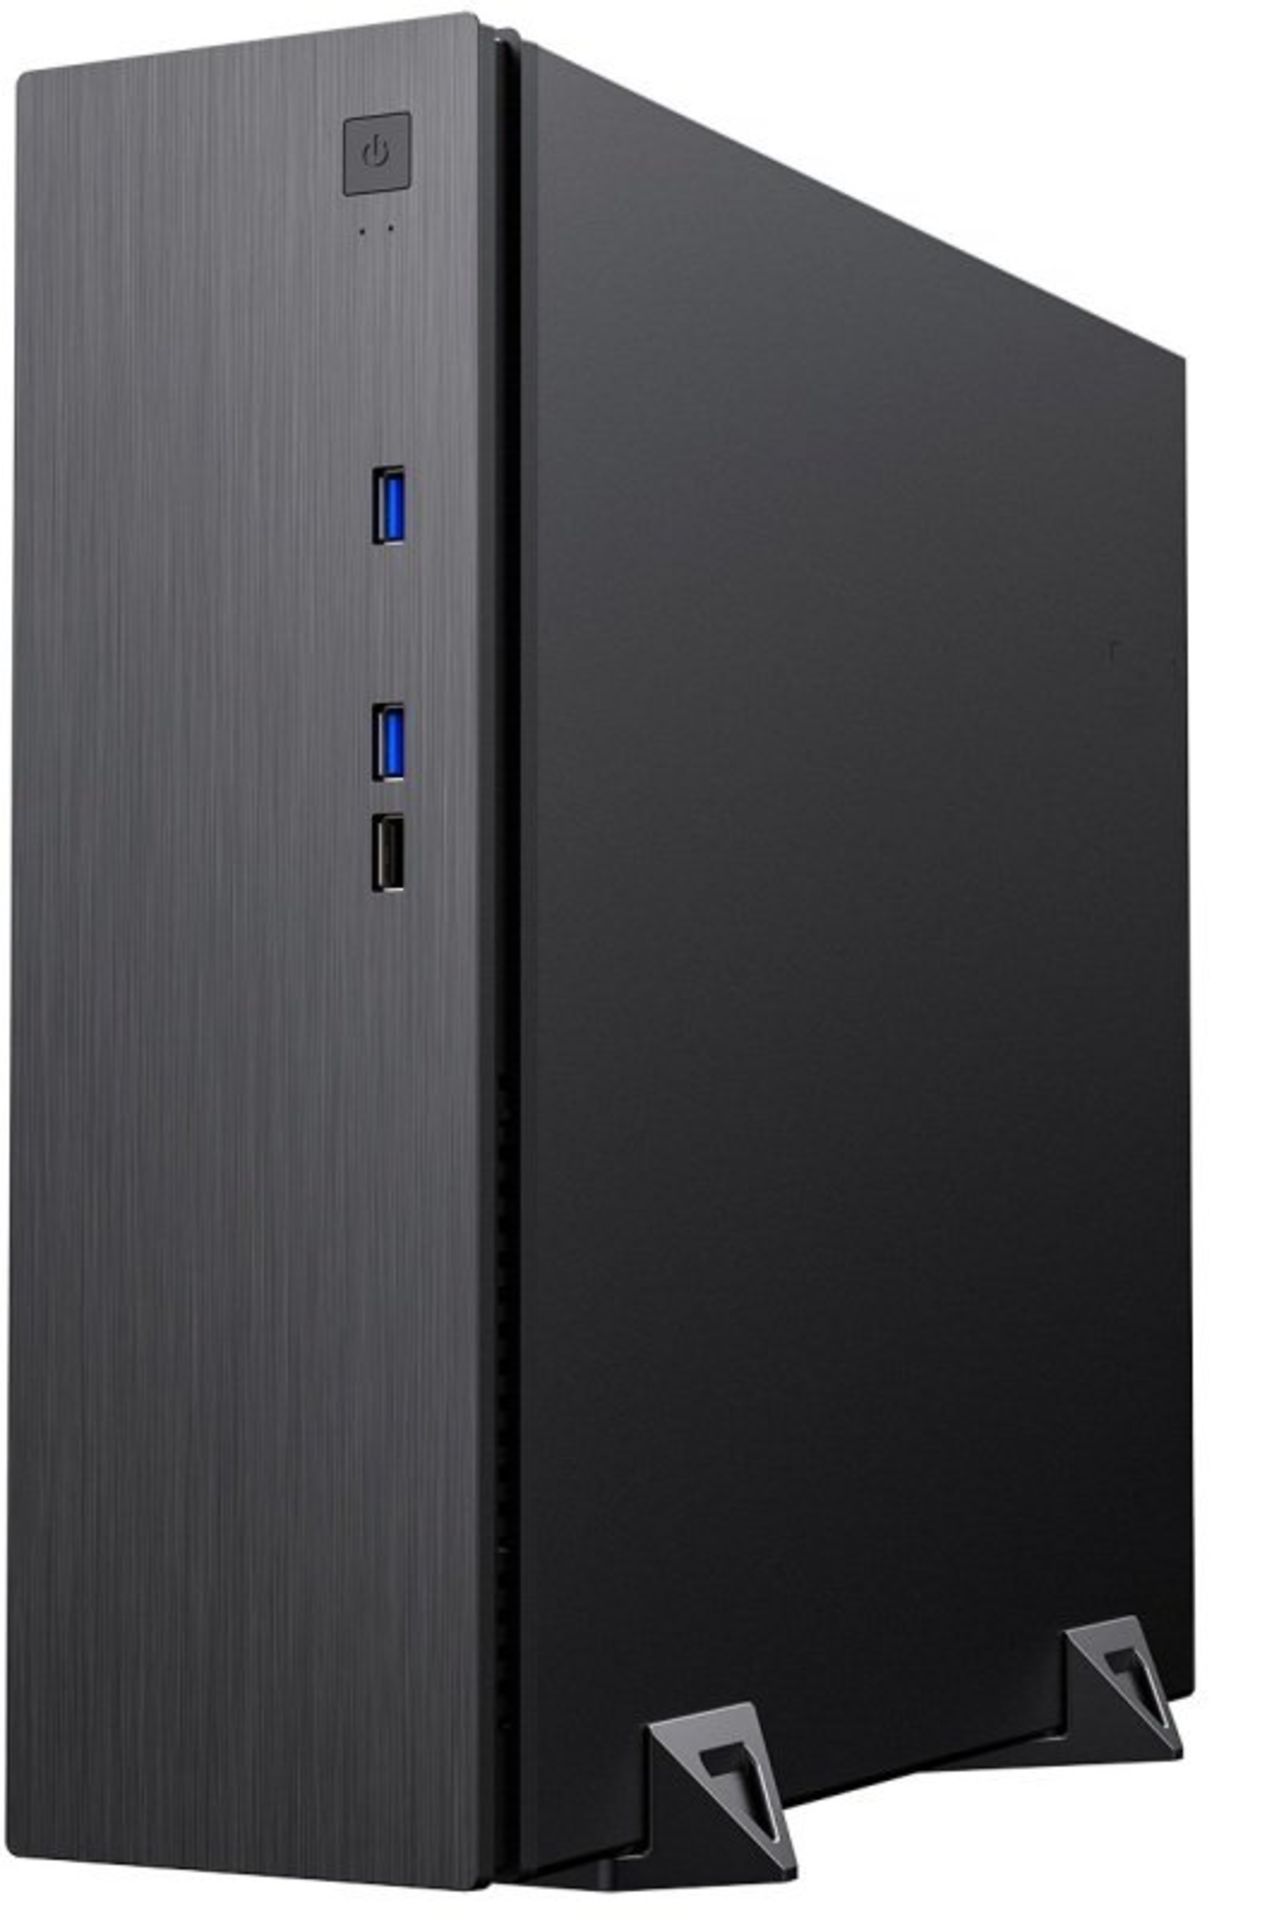 3x NEW & BOXED CIT S506 Micro ATX Desktop Case - BLACK. RRP £44.99 EACH. (PCK). The CiT S506 slim - Image 2 of 10